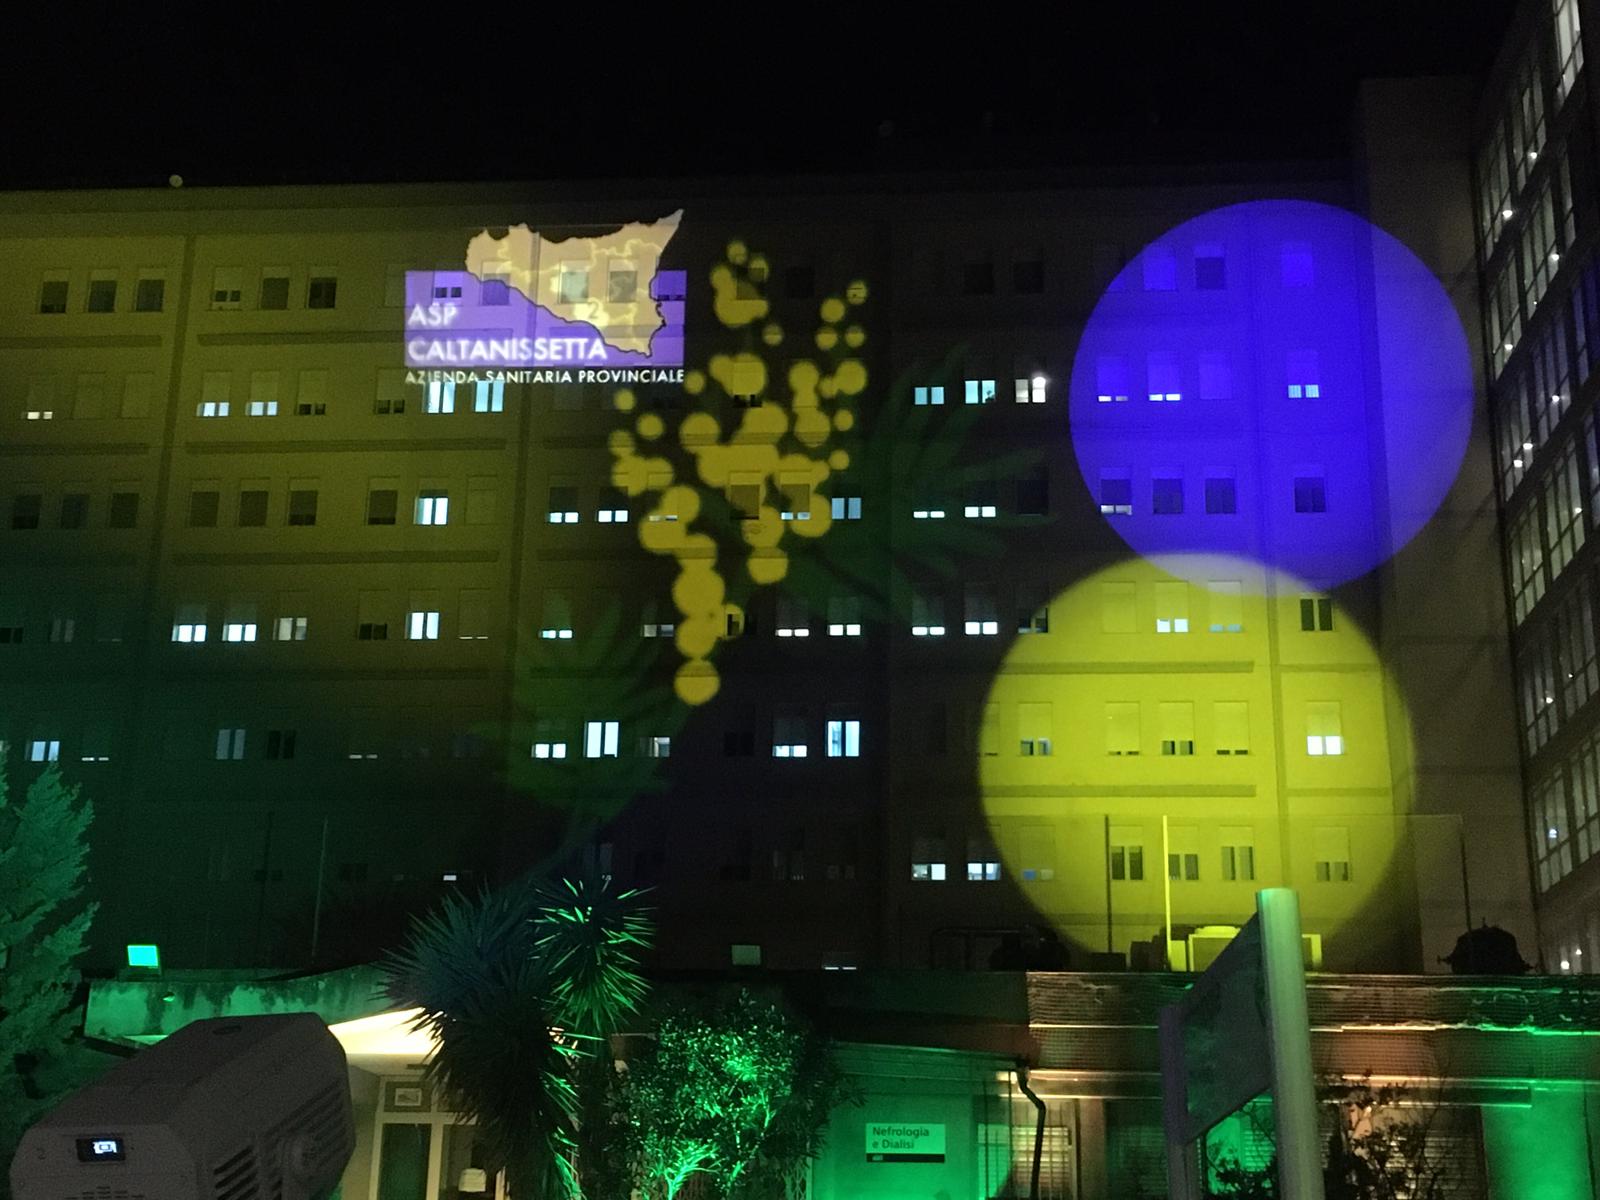 Caltanissetta, Asp: illuminazione architetturale onora le donne e sostiene l’Ucraina